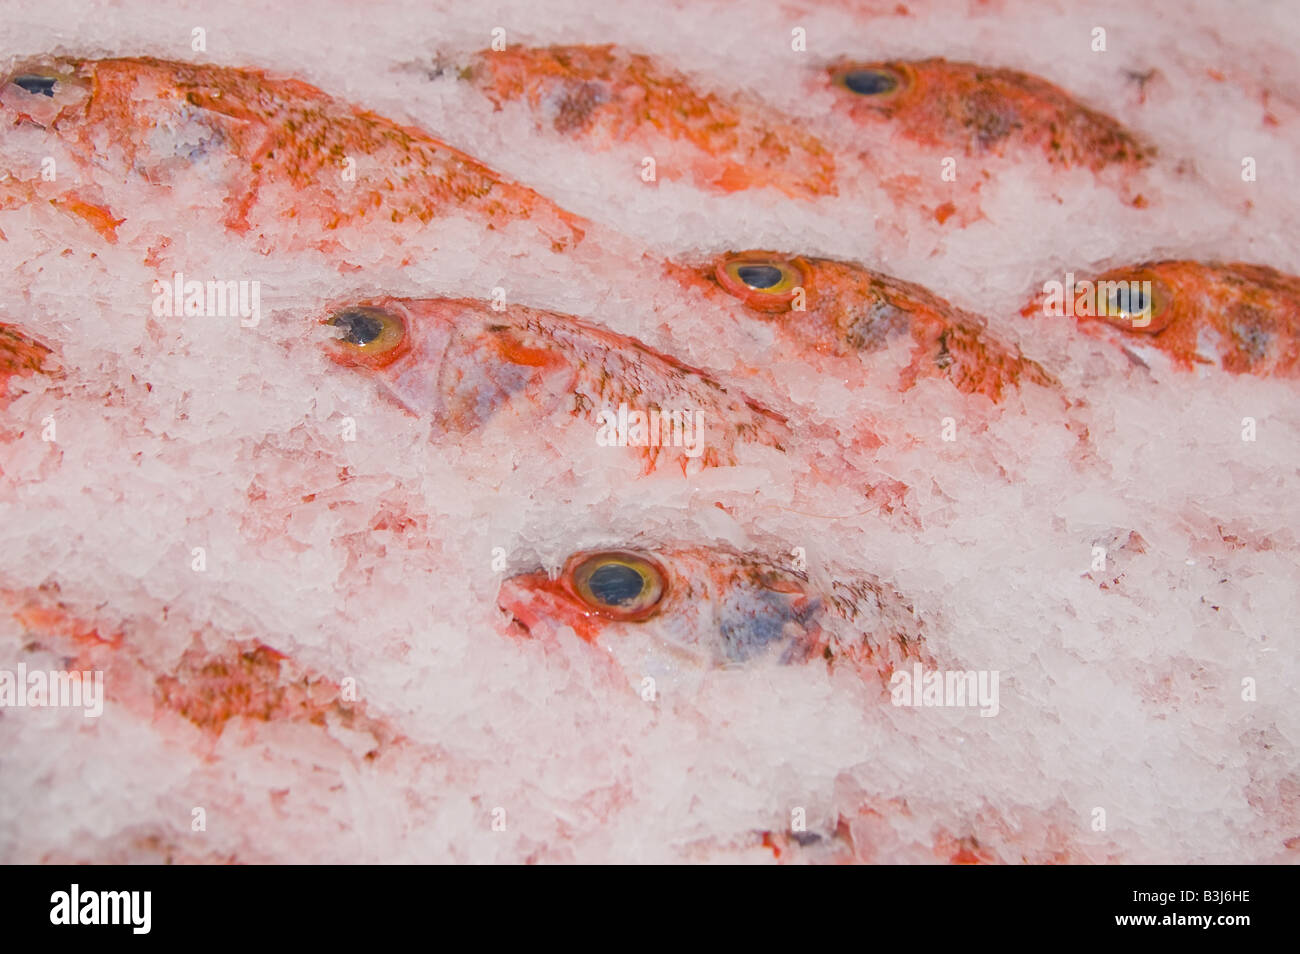 deep sea fish on ice Stock Photo